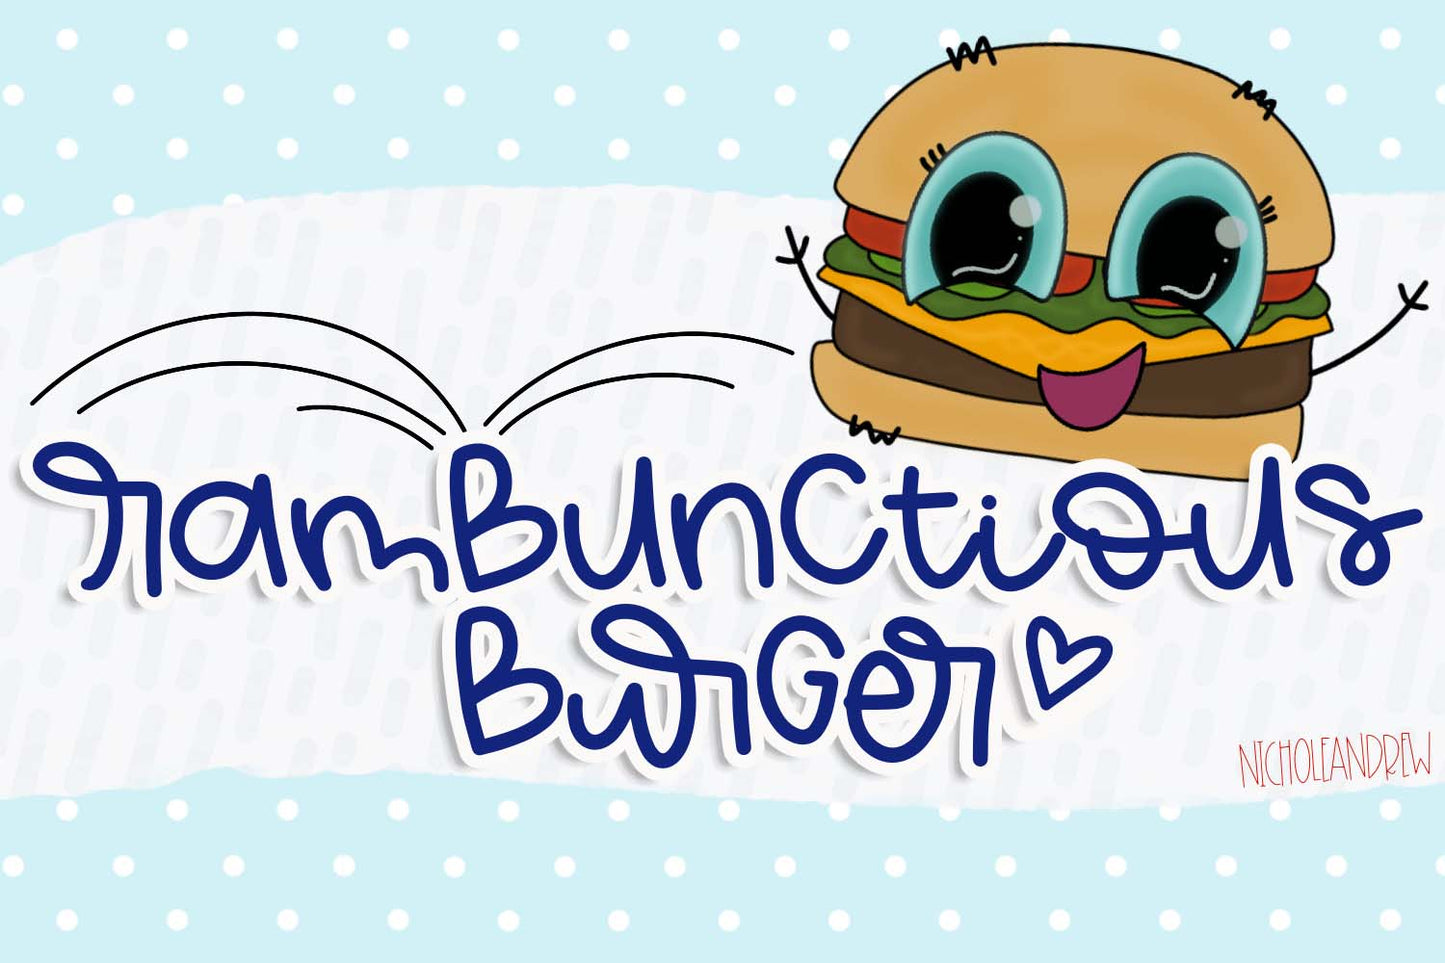 Rambunctious Burger - Handwritten Font